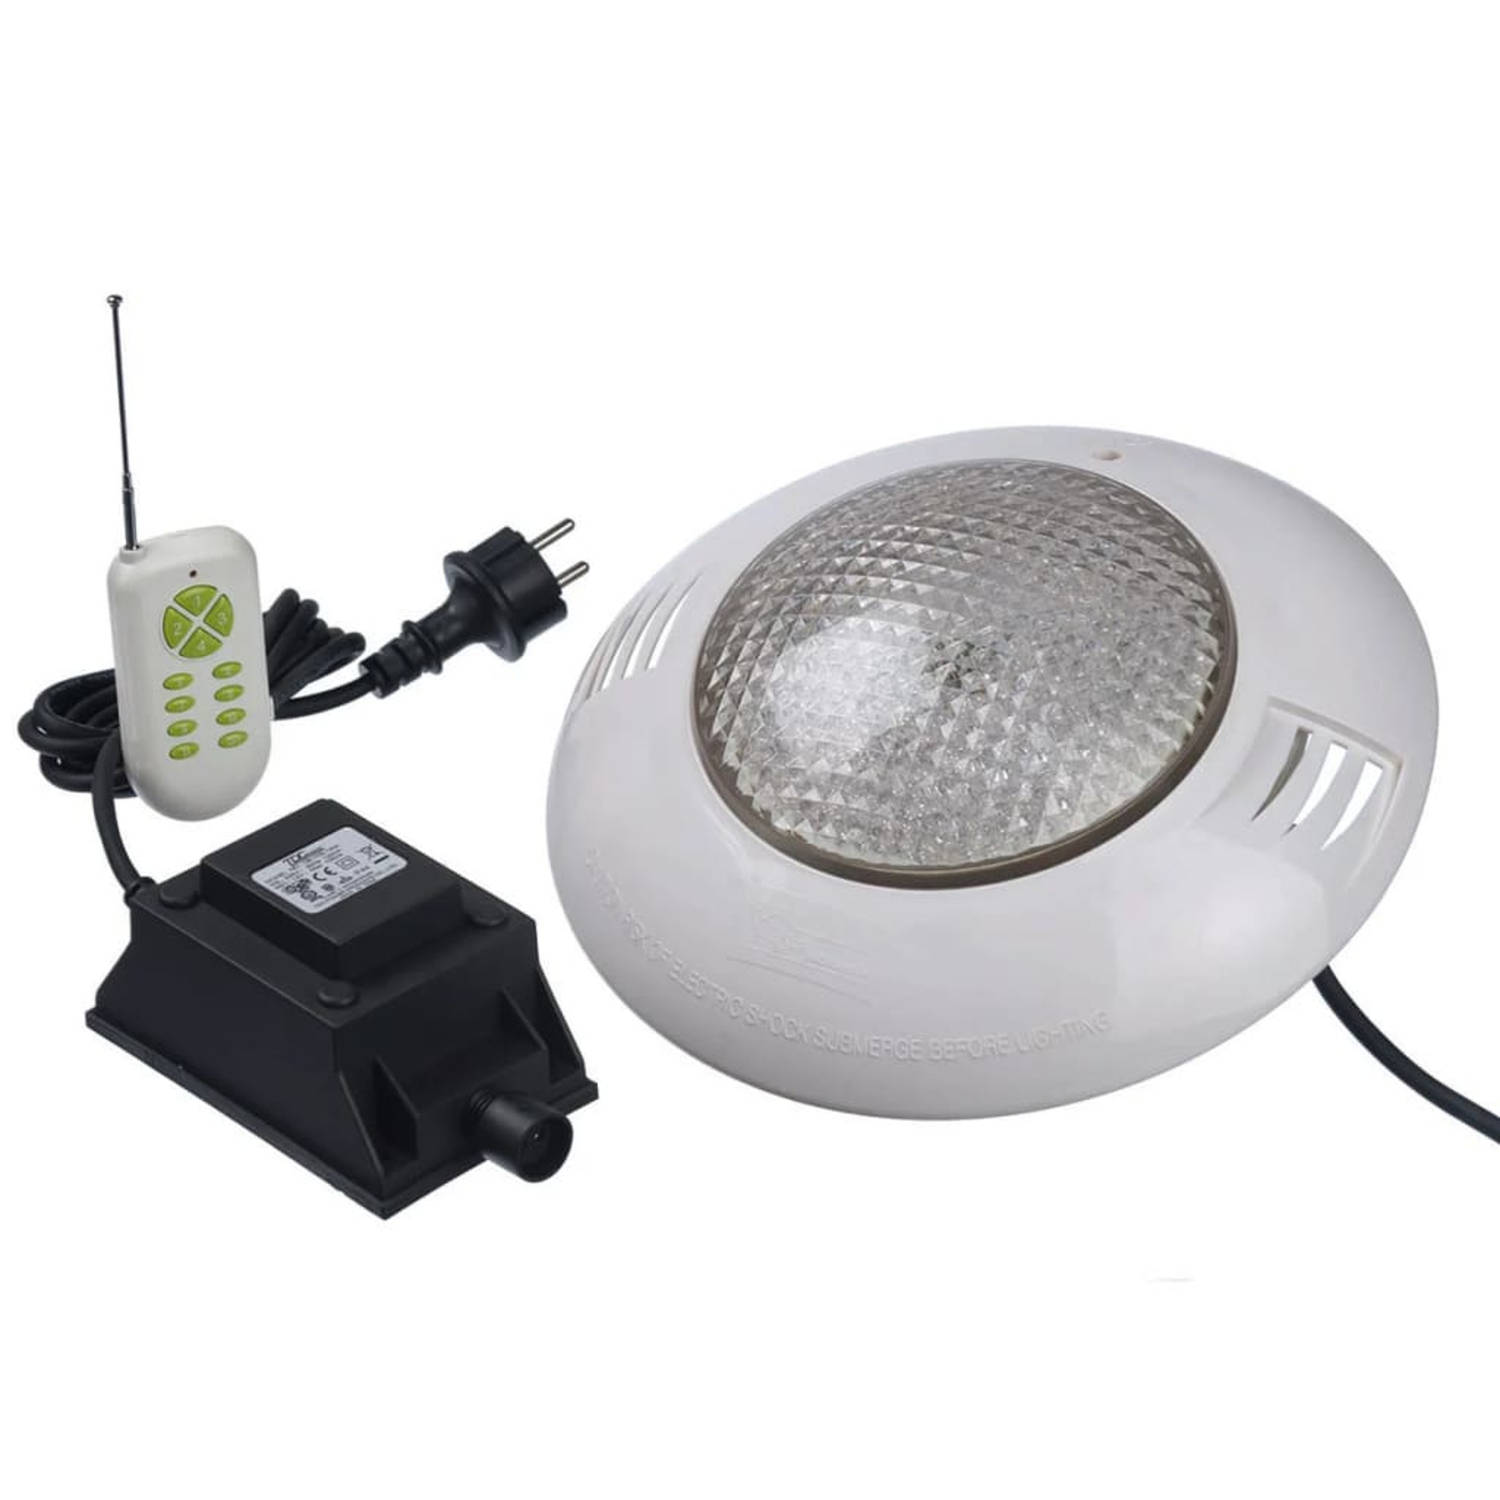 Ubbink LED-Spot 406 RGB met afstandbediening en veiligheidstransformator